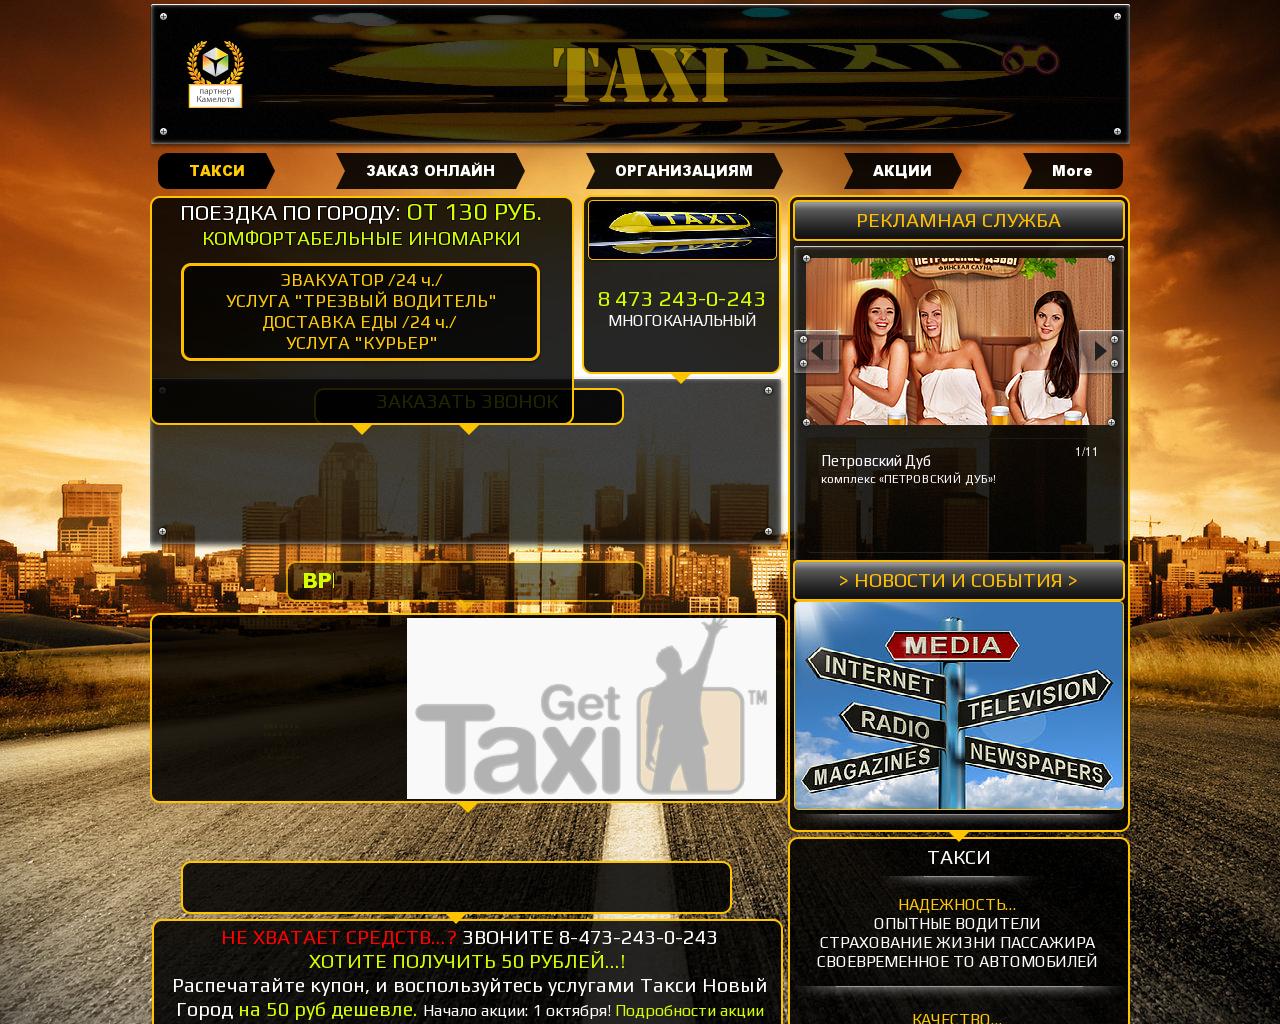 Изображение сайта такси36.рф в разрешении 1280x1024